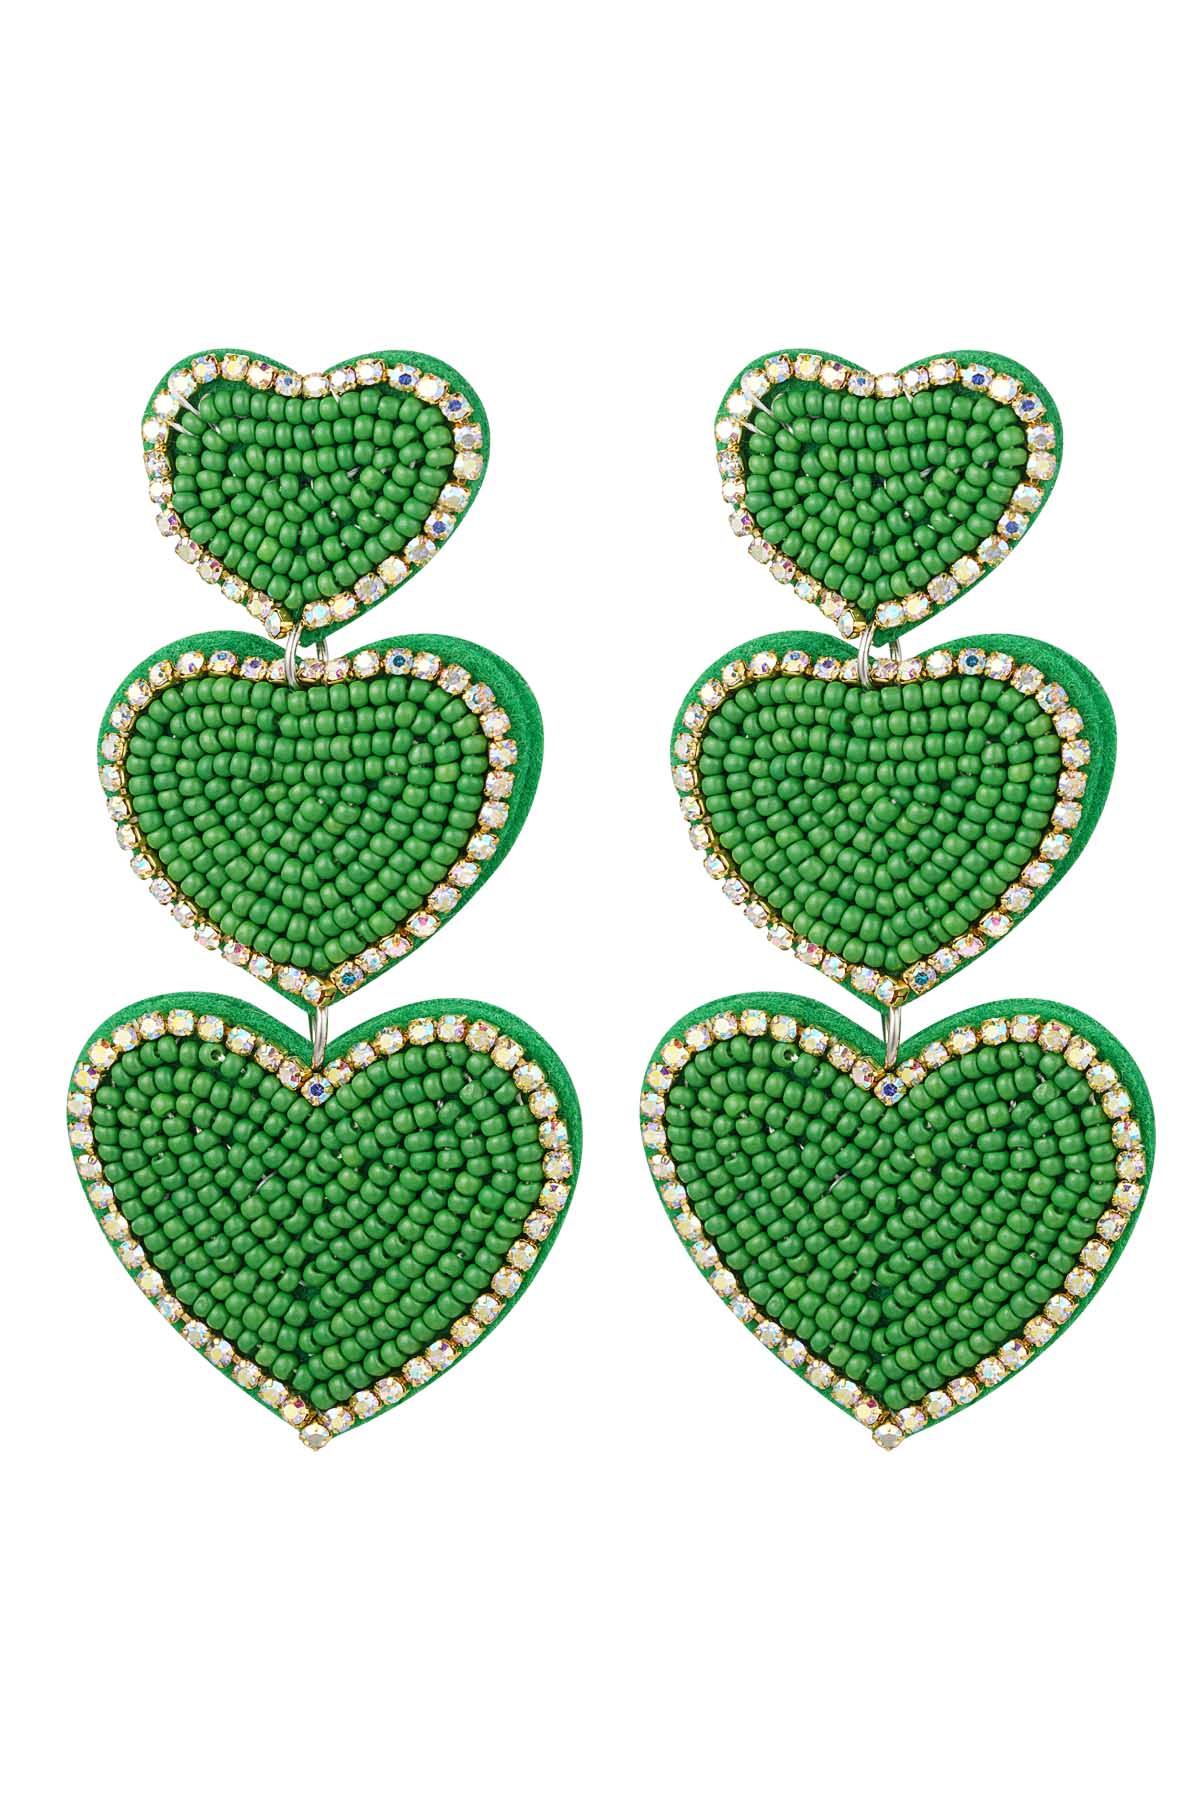 Küpe boncukları 3 x kalp yeşili Green Glass